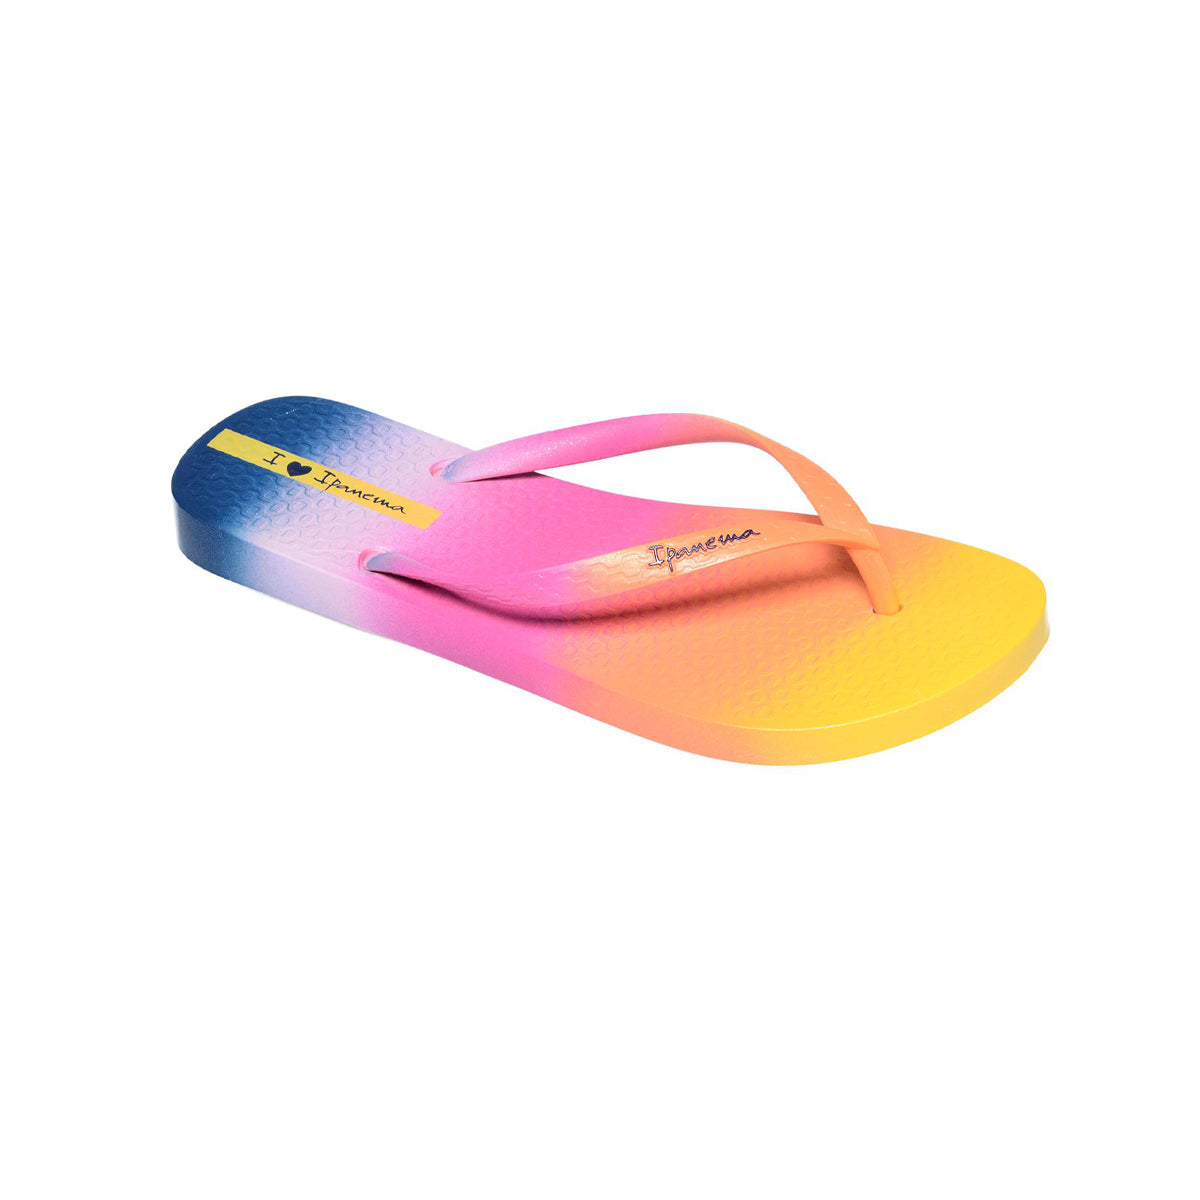 Ipanema Flip-Flops For Women, Assorted Colors